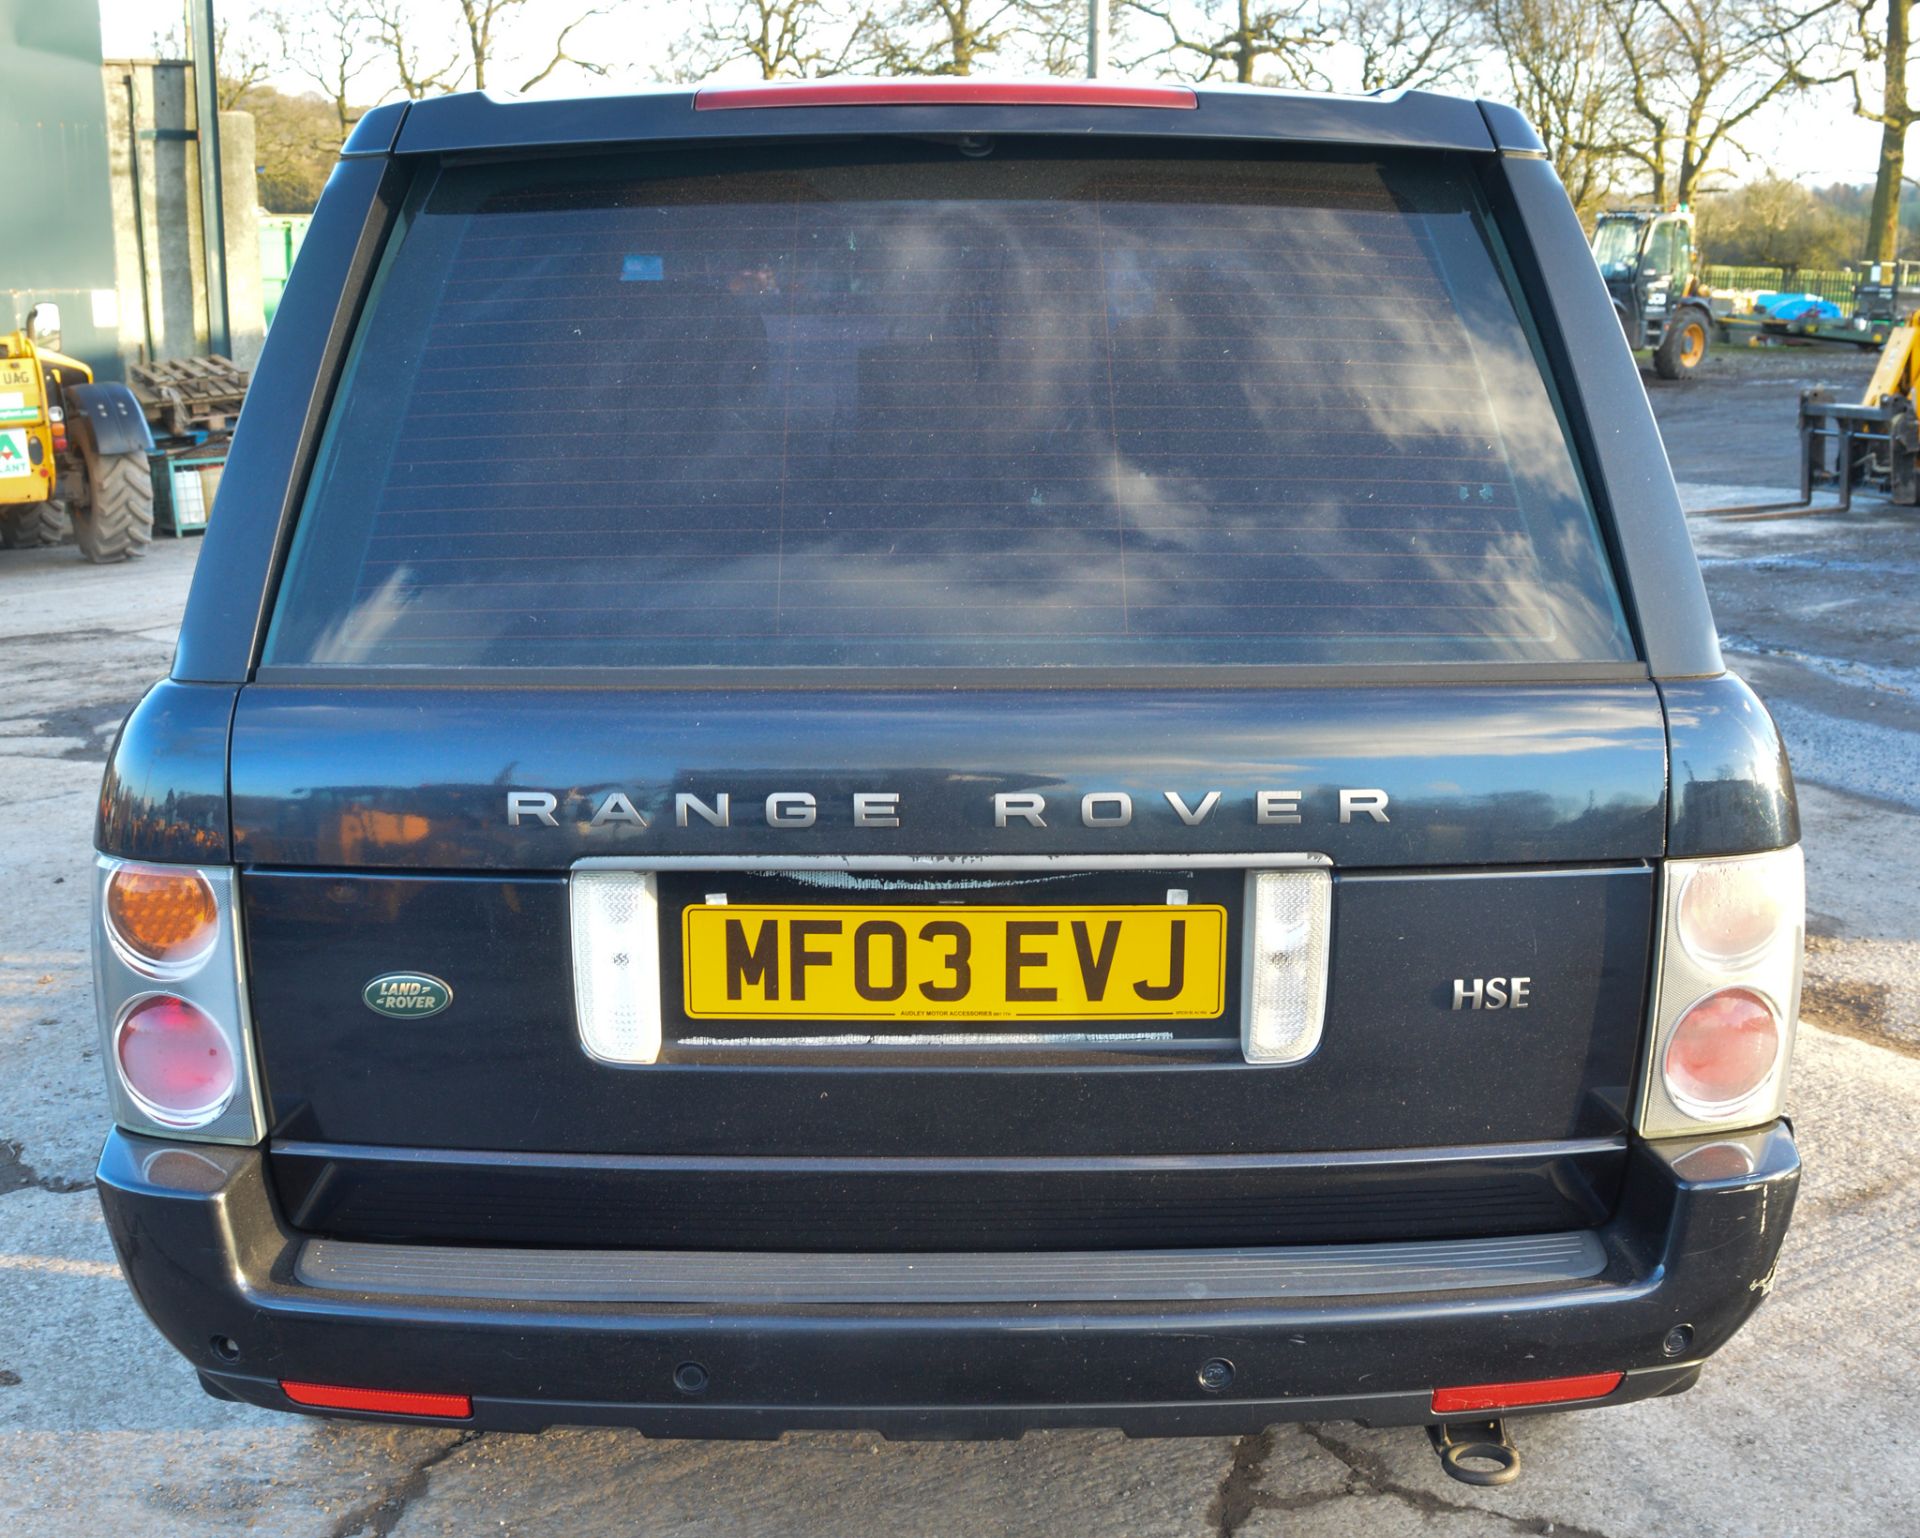 Range Rover HSE TD6 Auto diesel SUV  Registration Number: MF03 EVJ Date of Registration:14/03/2003 - Image 5 of 11